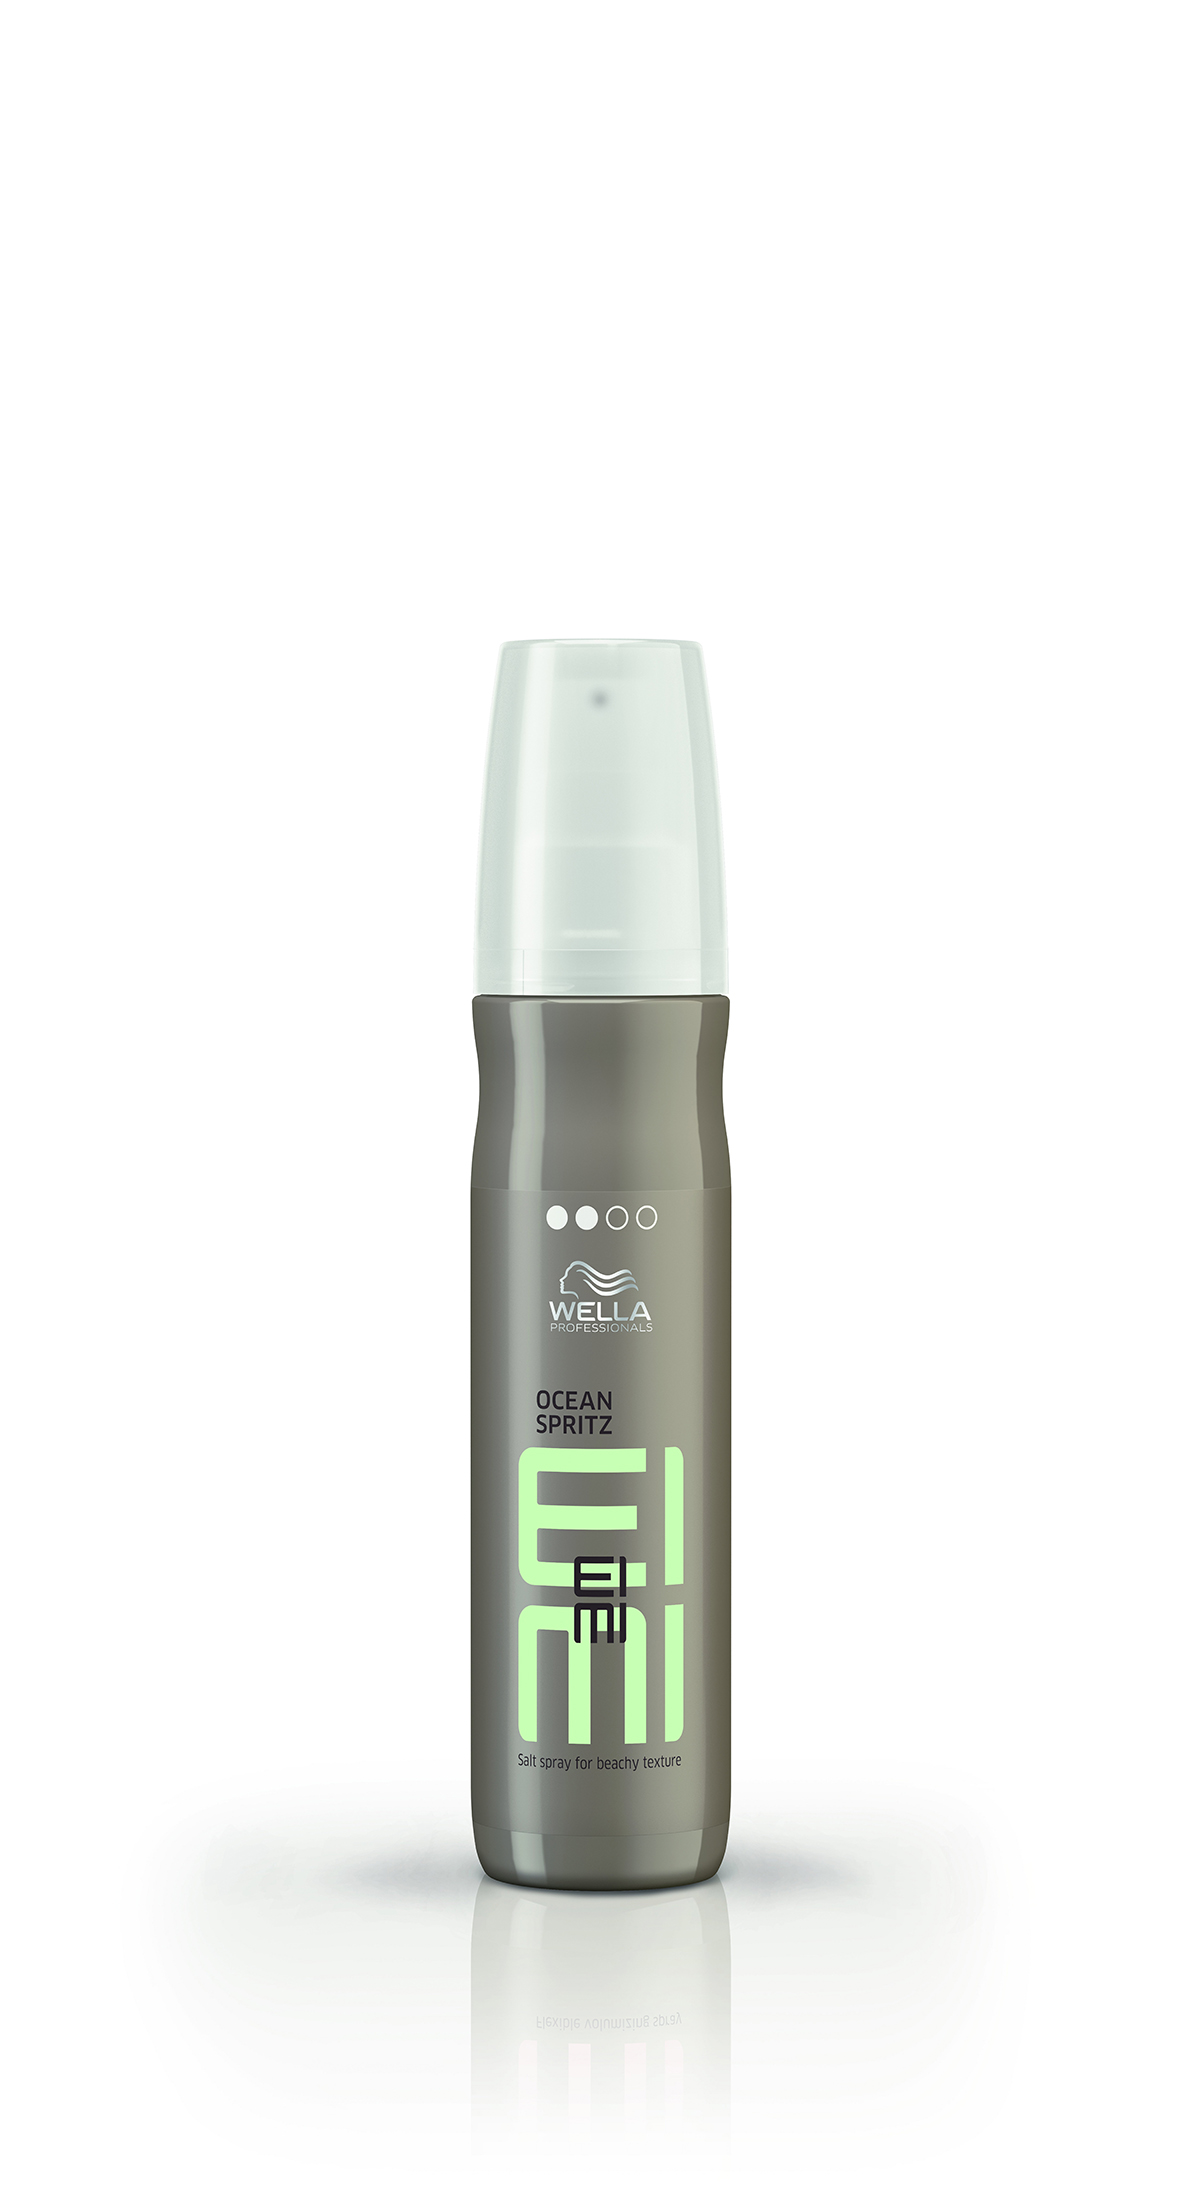 Spray salini per i capelli: come utilizzarli al meglio - Iconmagazine